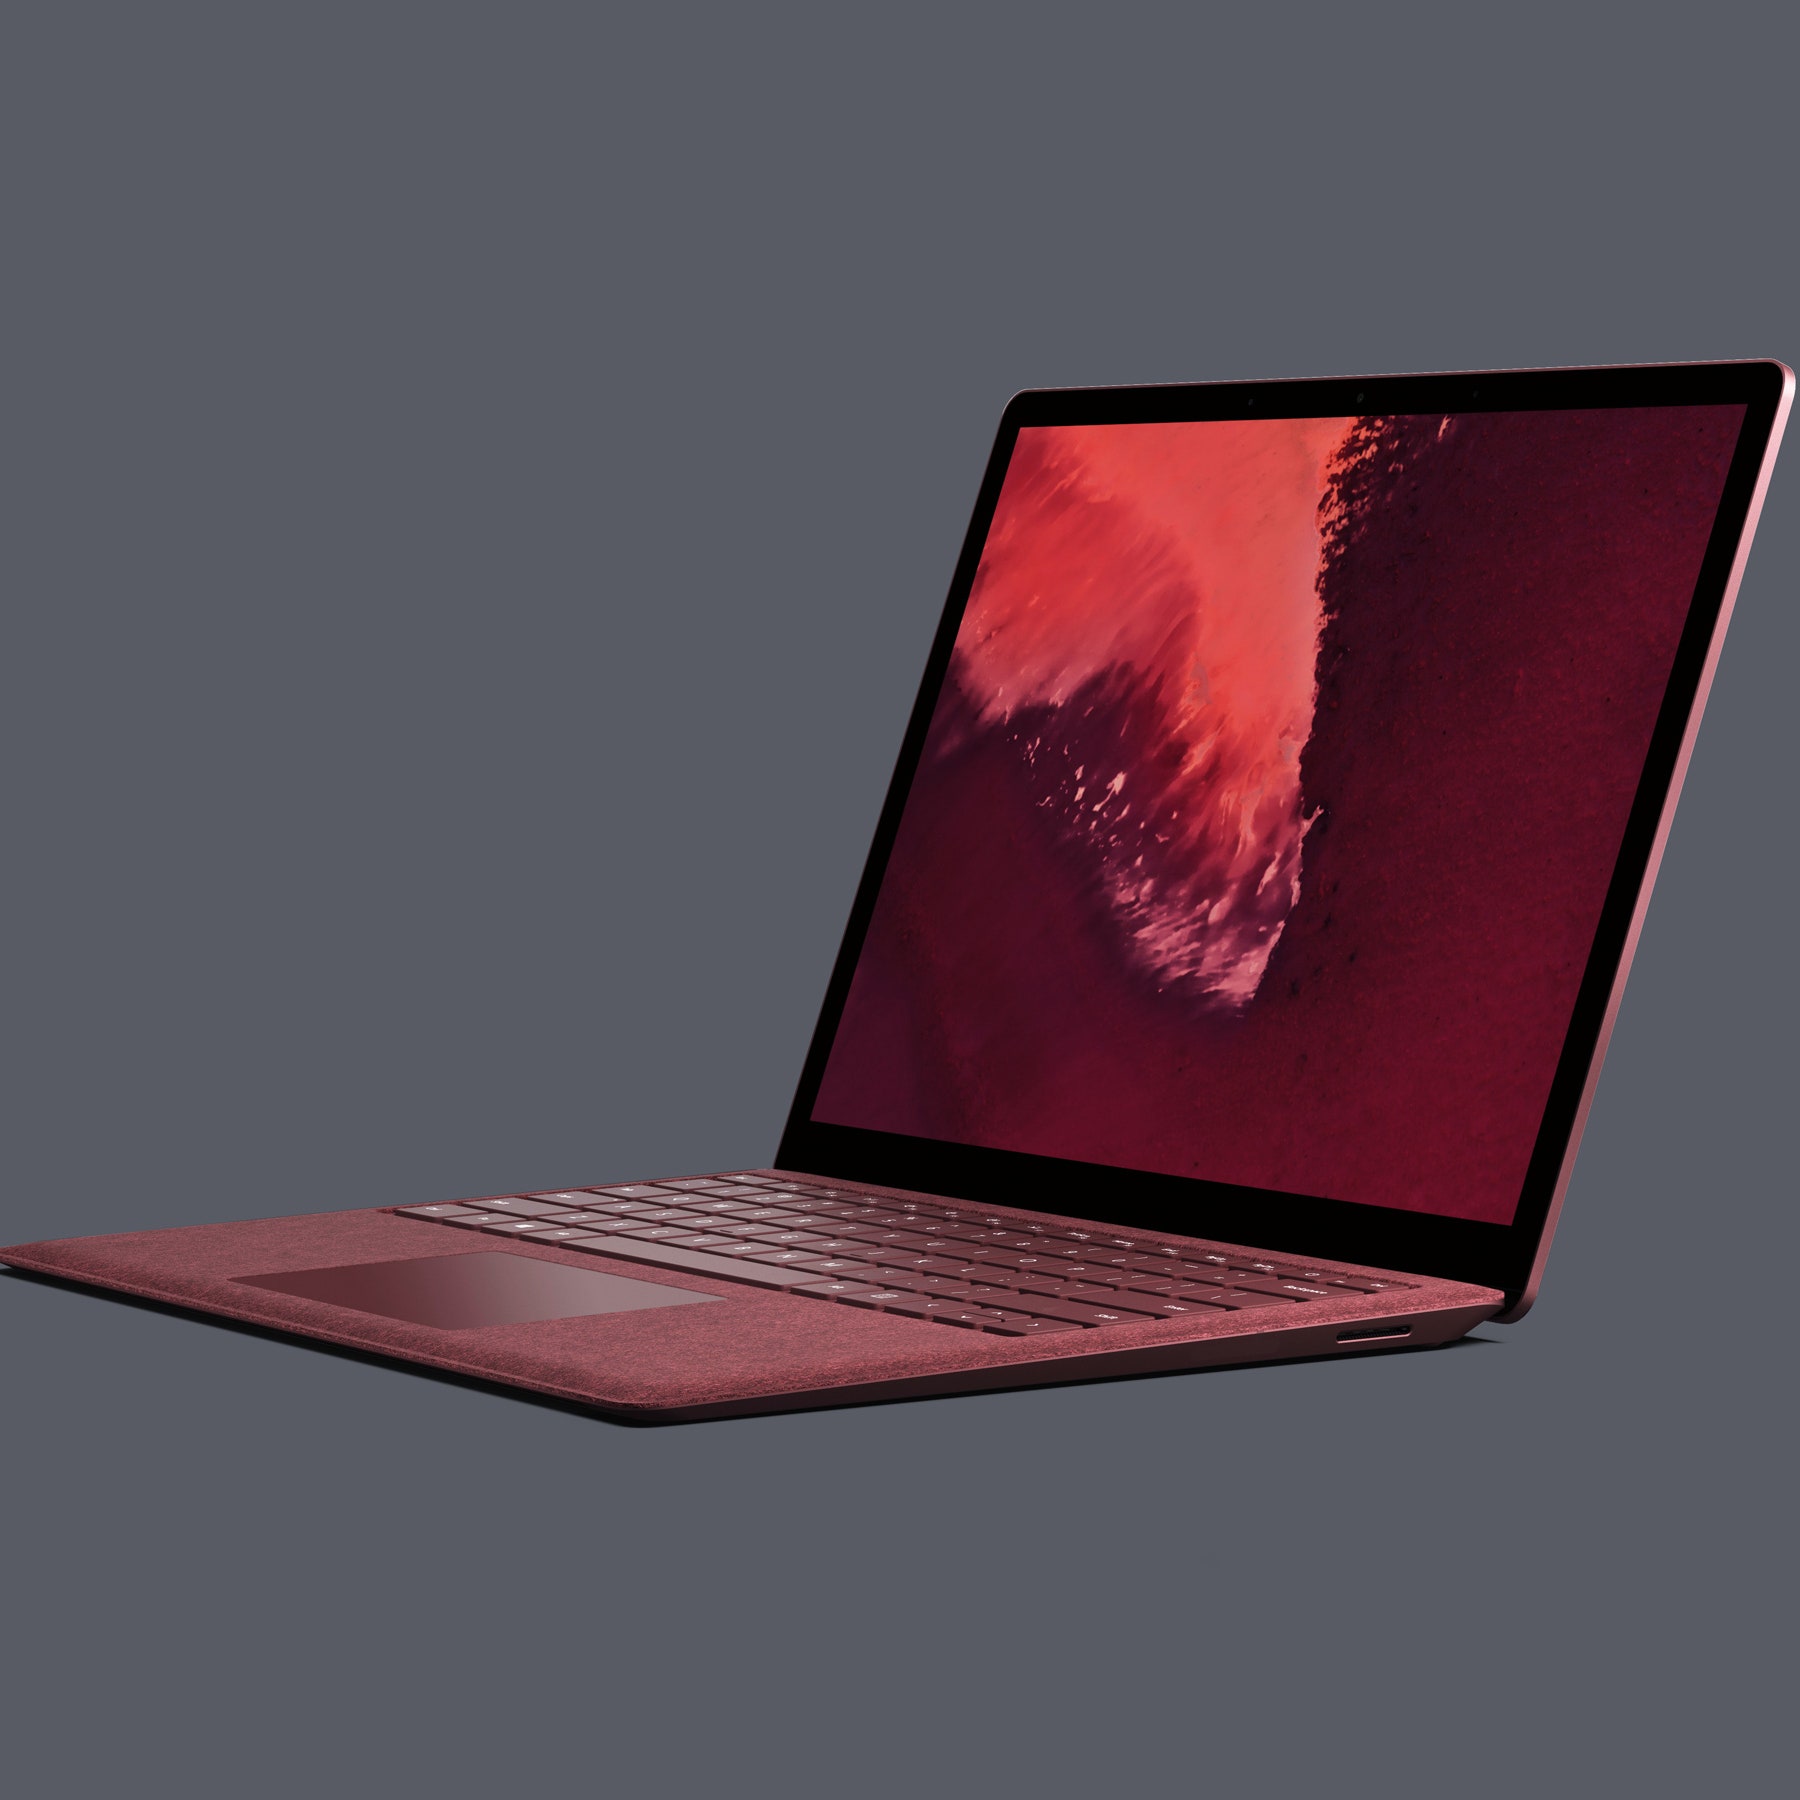 Cải tiến nổi bật trên Surface Pro 7